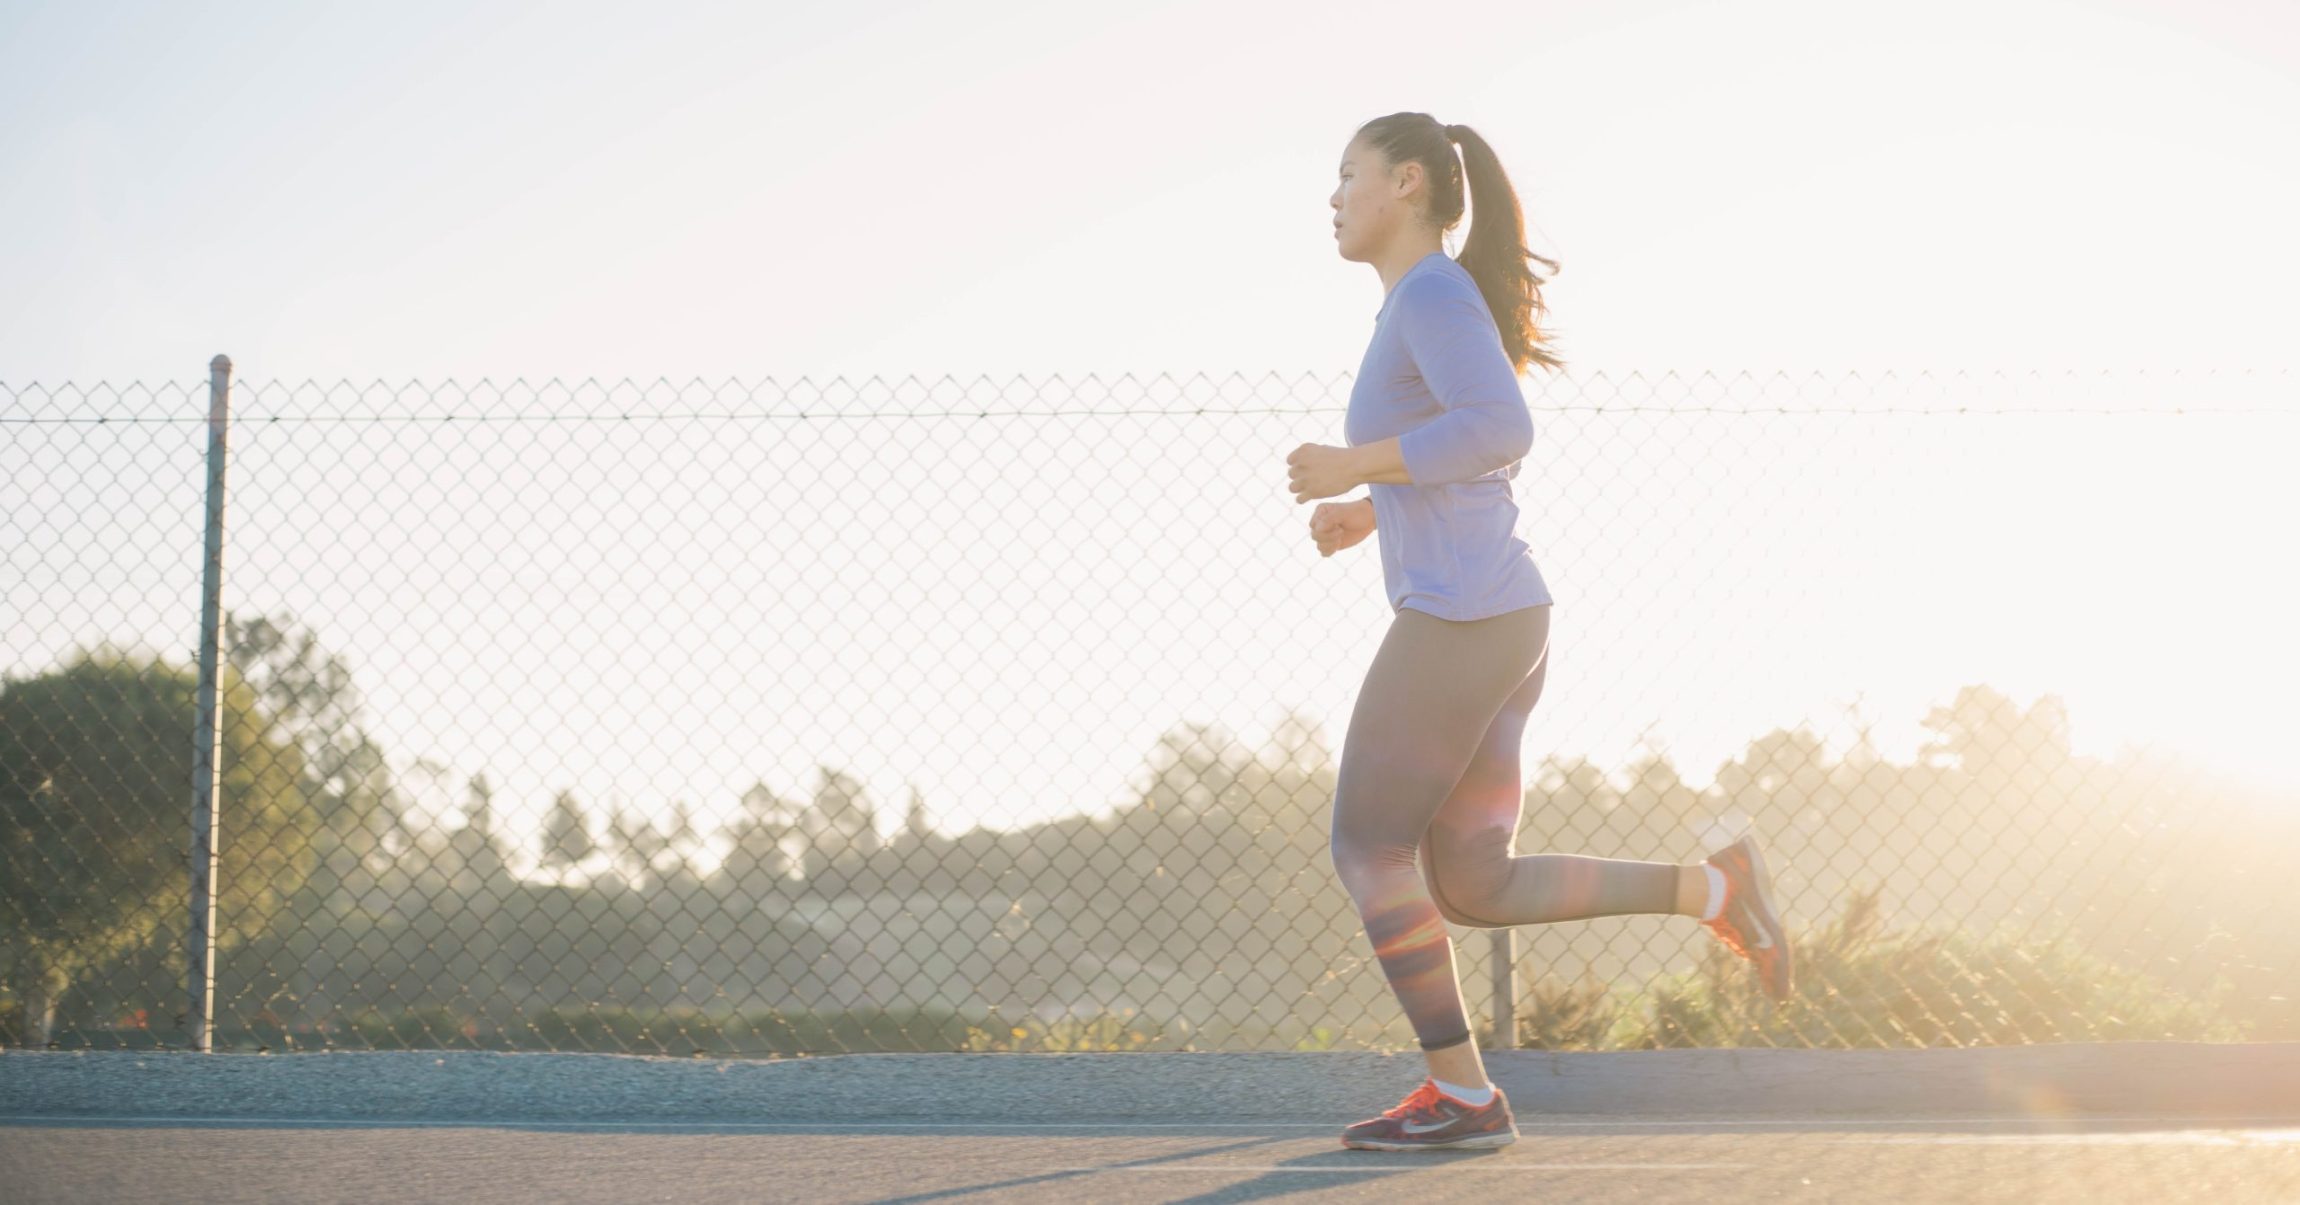 Sporten tijdens je menstruatie: dit zijn de voordelen!